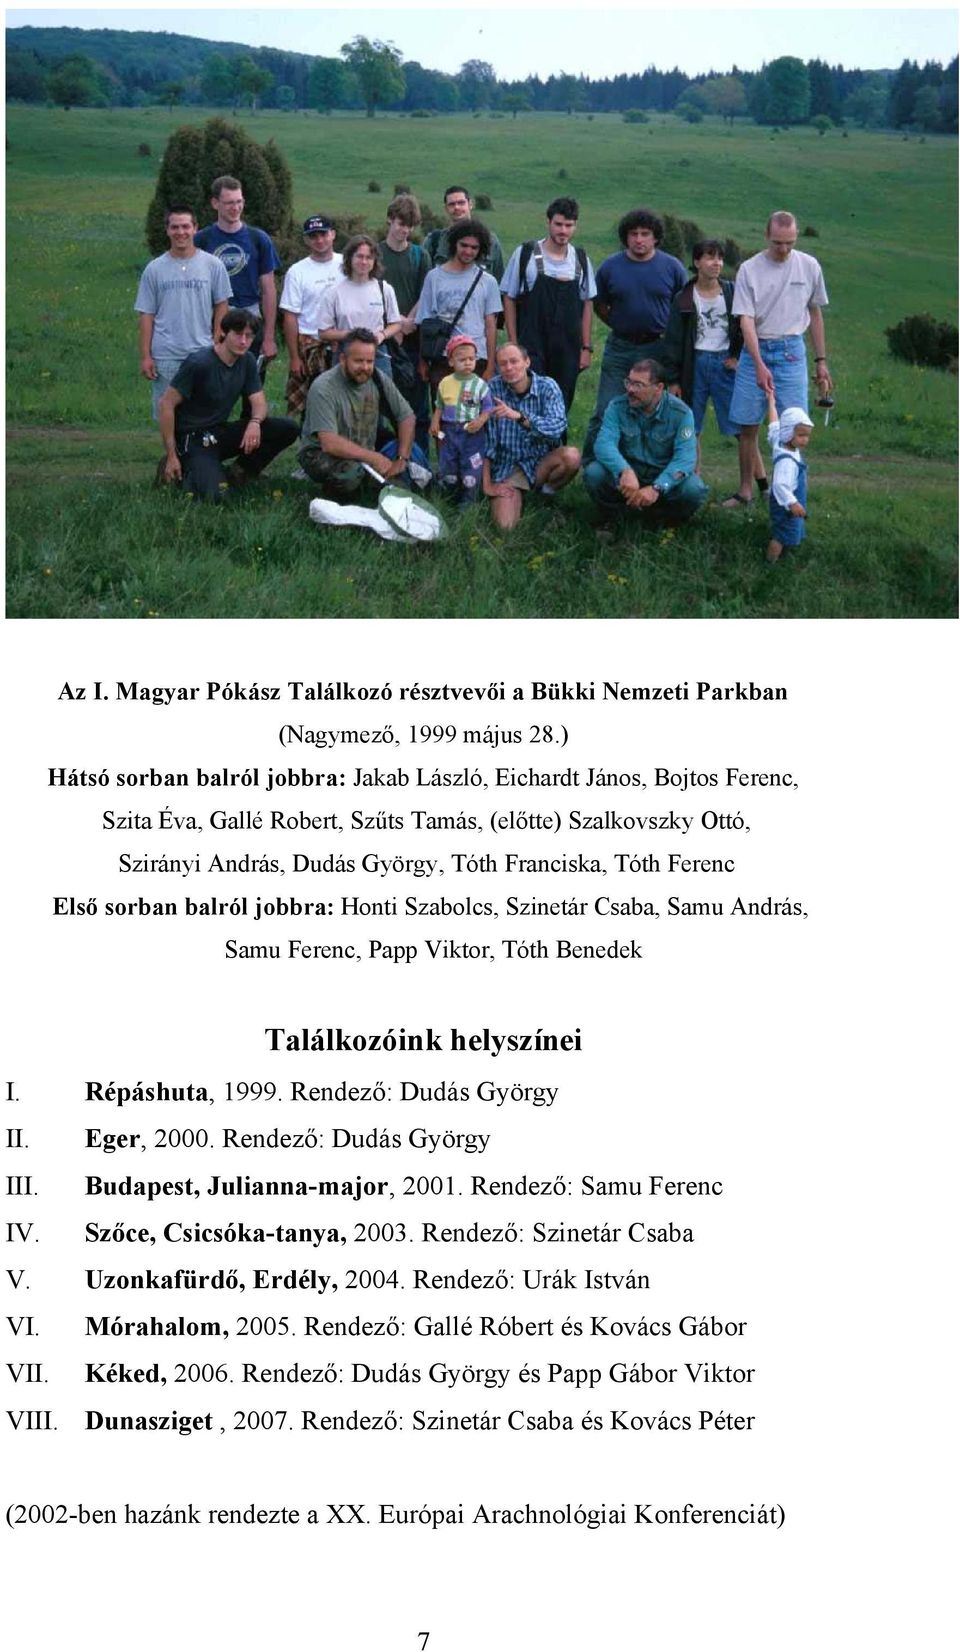 Első sorban balról jobbra: Honti Szabolcs, Szinetár Csaba, Samu András, Samu Ferenc, Papp Viktor, Tóth Benedek Találkozóink helyszínei I. Répáshuta, 1999. Rendező: Dudás György II. Eger, 2000.